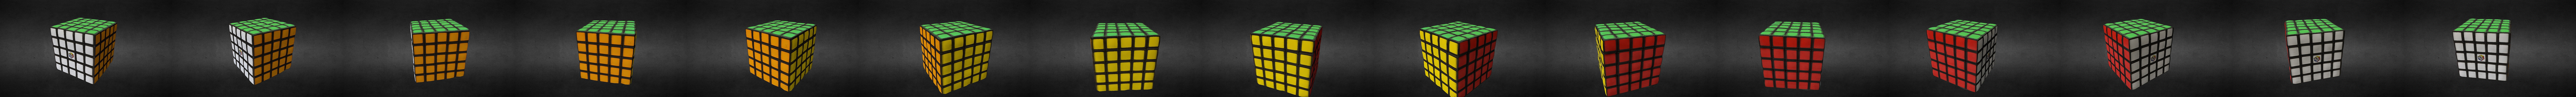 3D Model: Rubiks Cube 5x5 ~ Buy Now #90881693